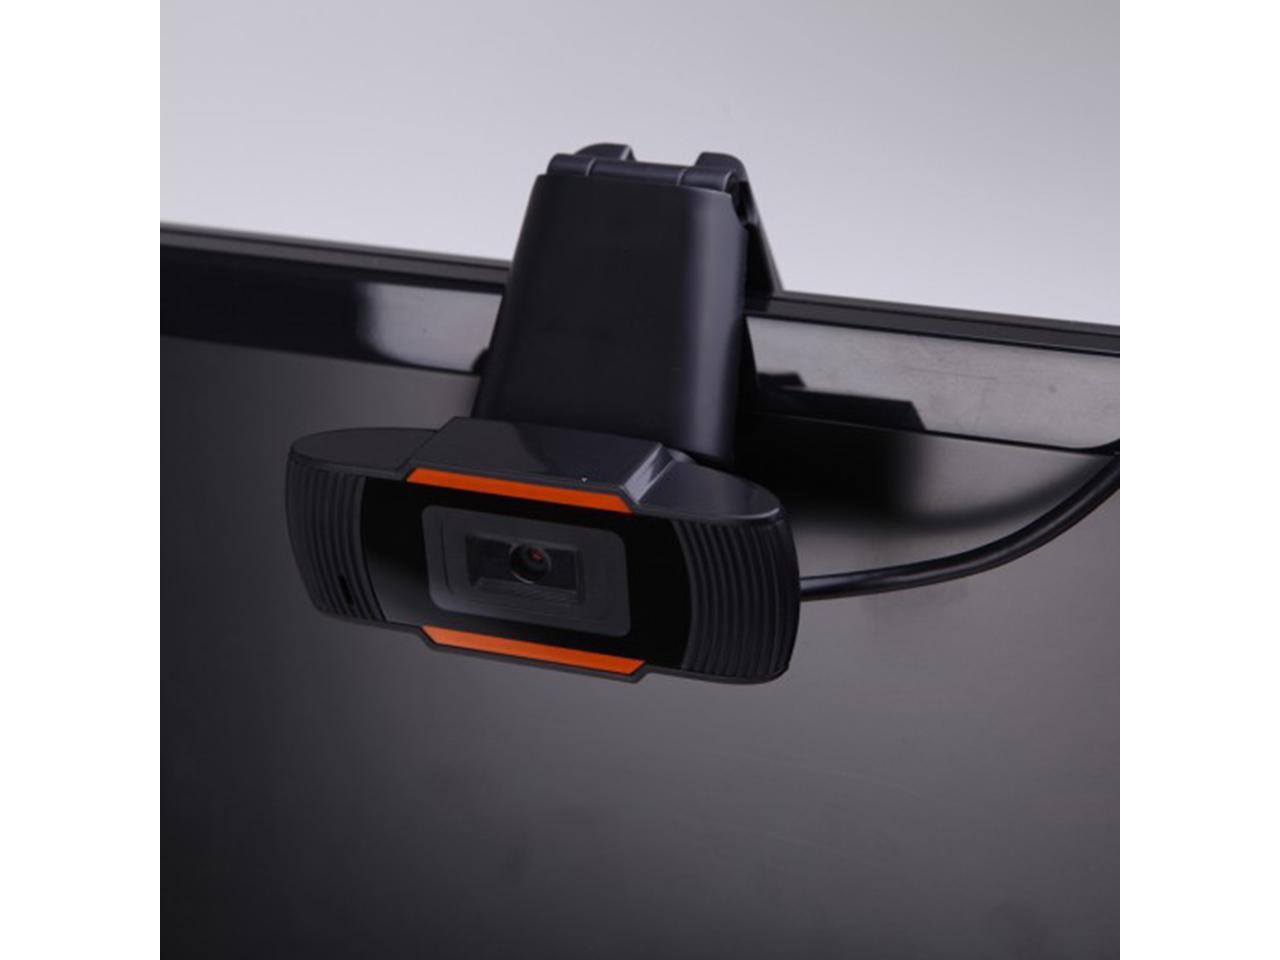 Autofocus and 500M Pixels 2.0 HD Webcam 1080p USB Camera w/Mic